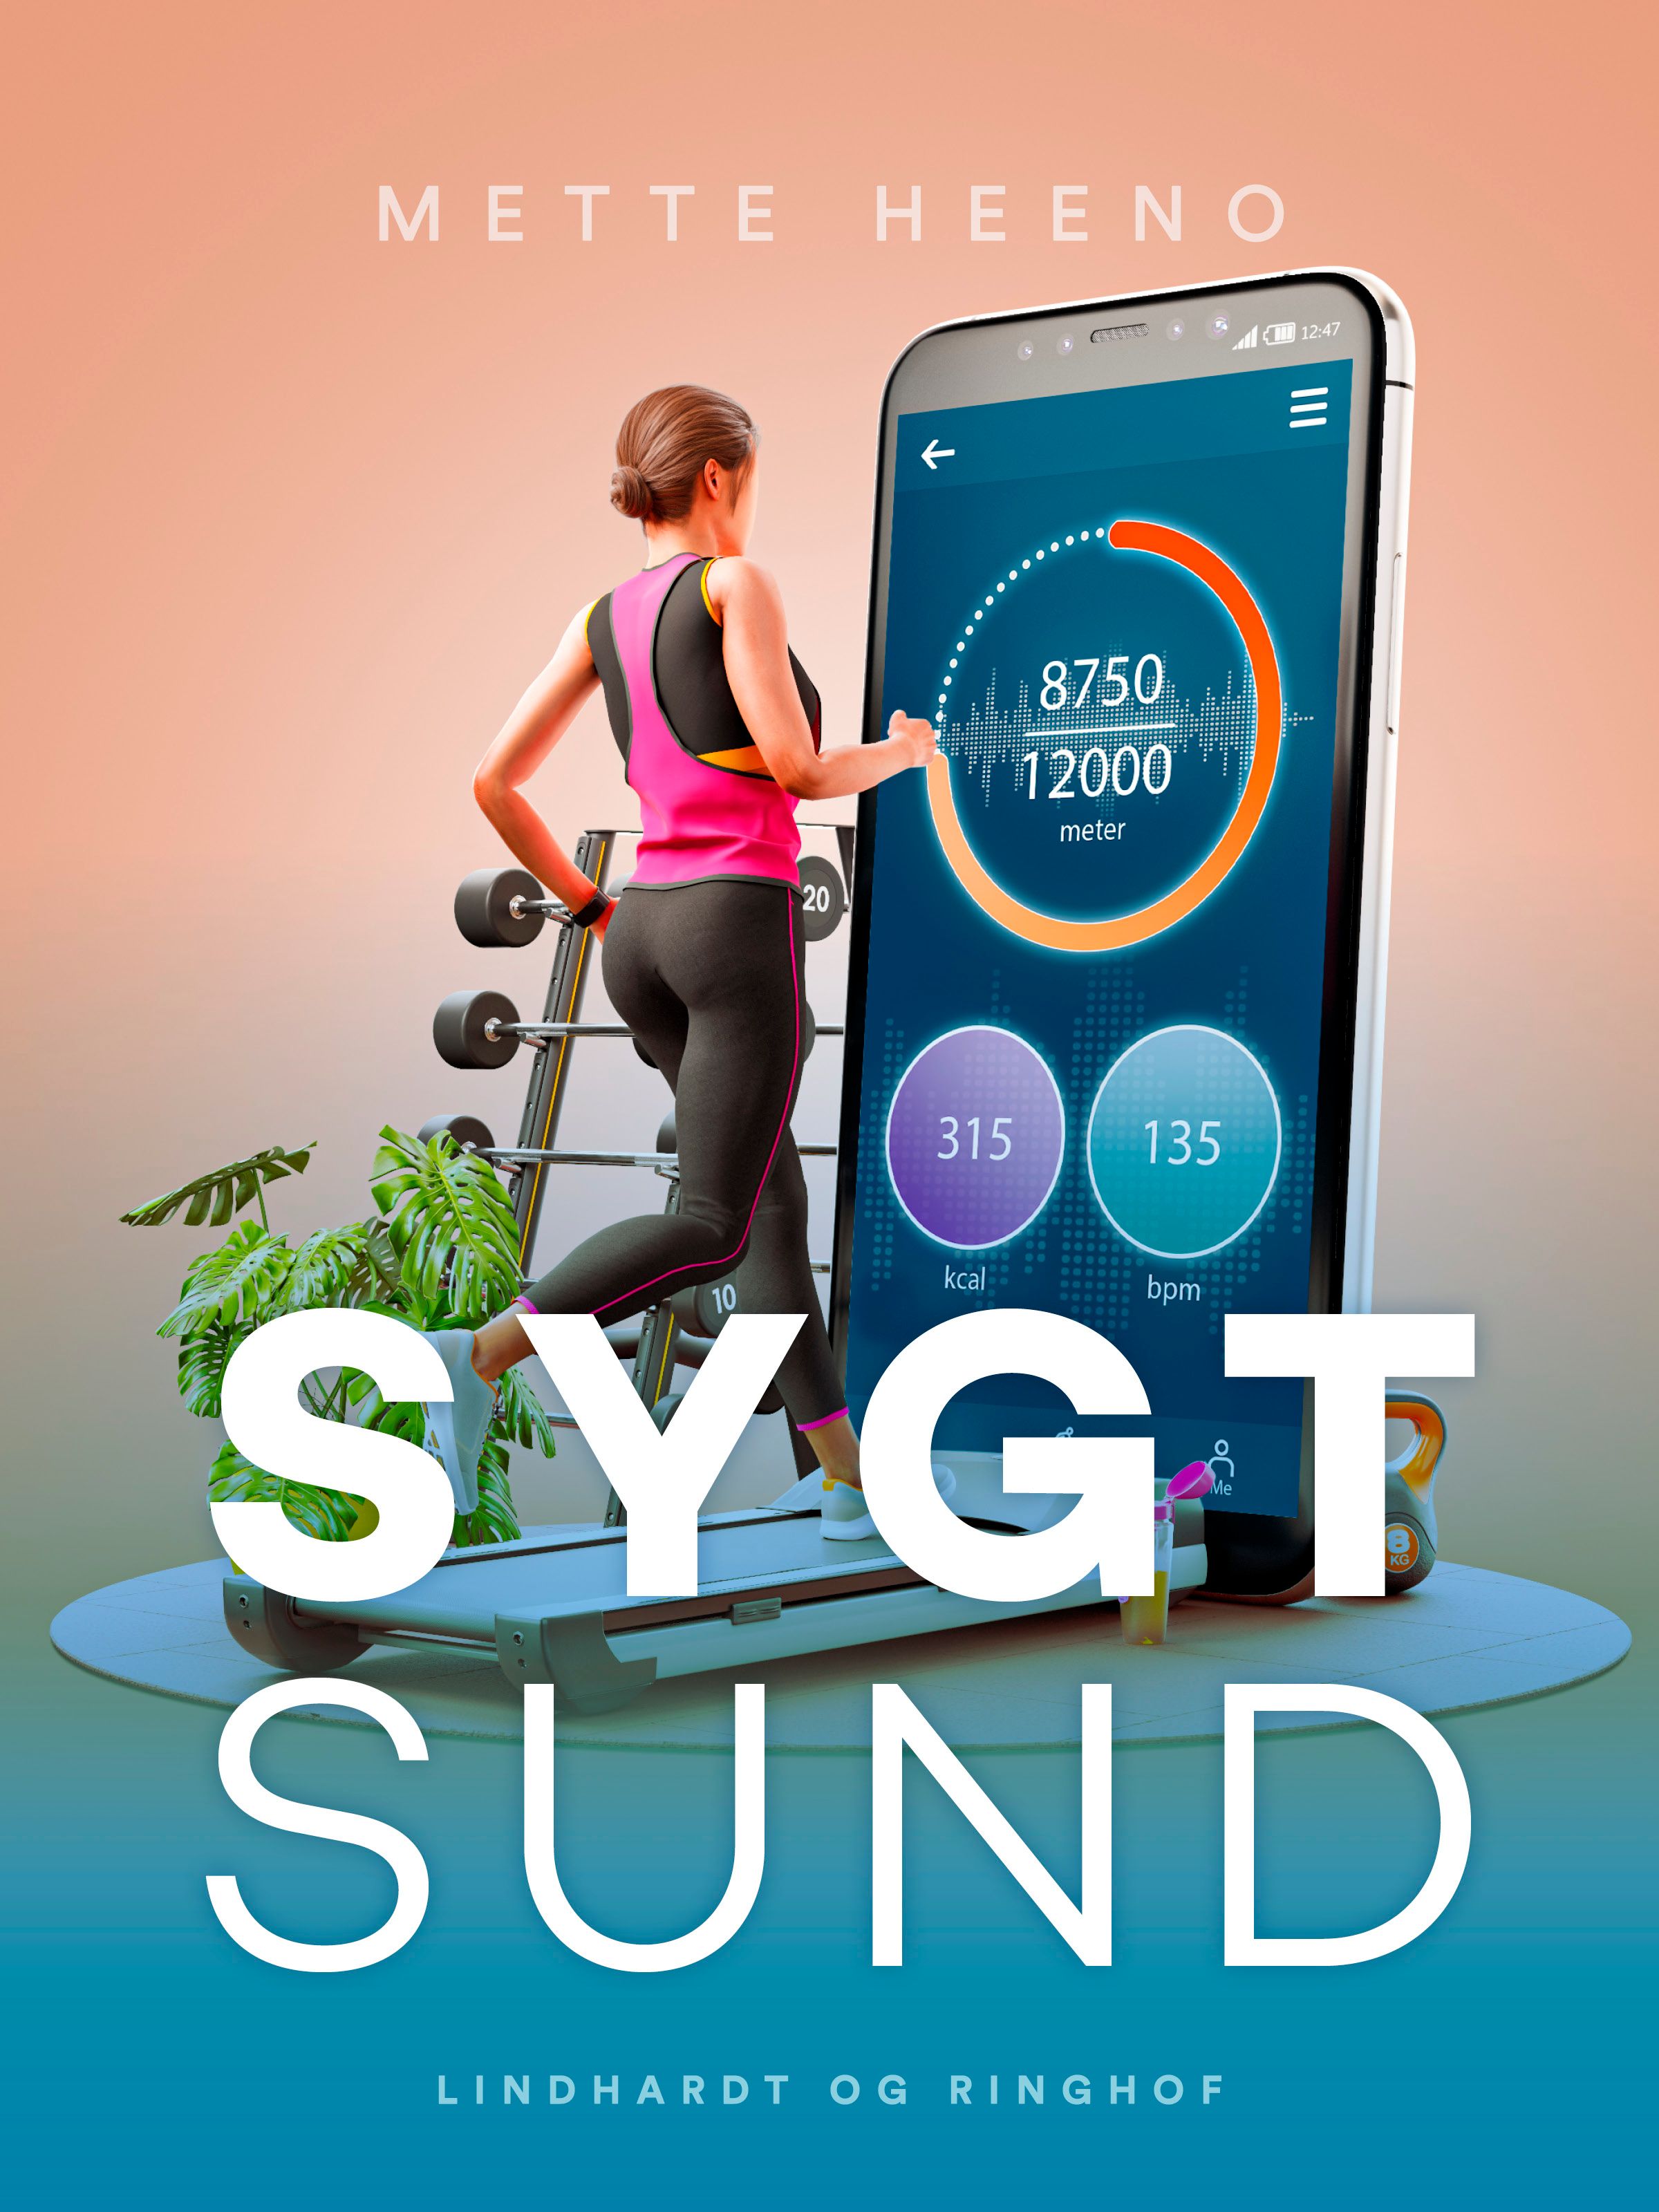 SygtSund, eBook by Mette Heeno